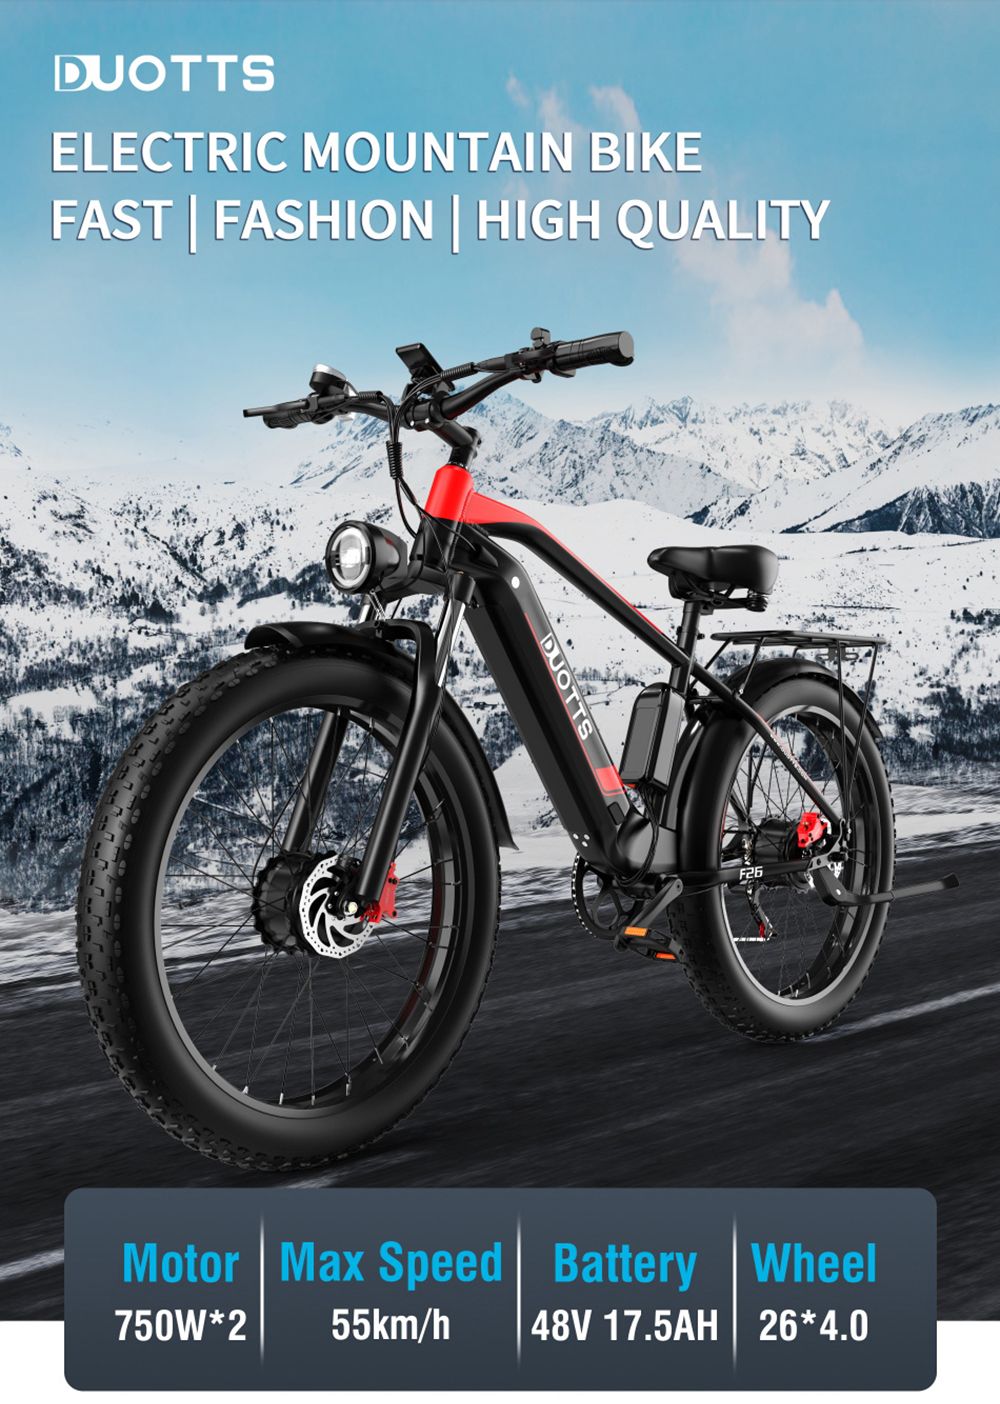 26 Inch Electric Bike DUOTTS F26 55Km/h 17.5 Ah 750W*2 Double Motors Black